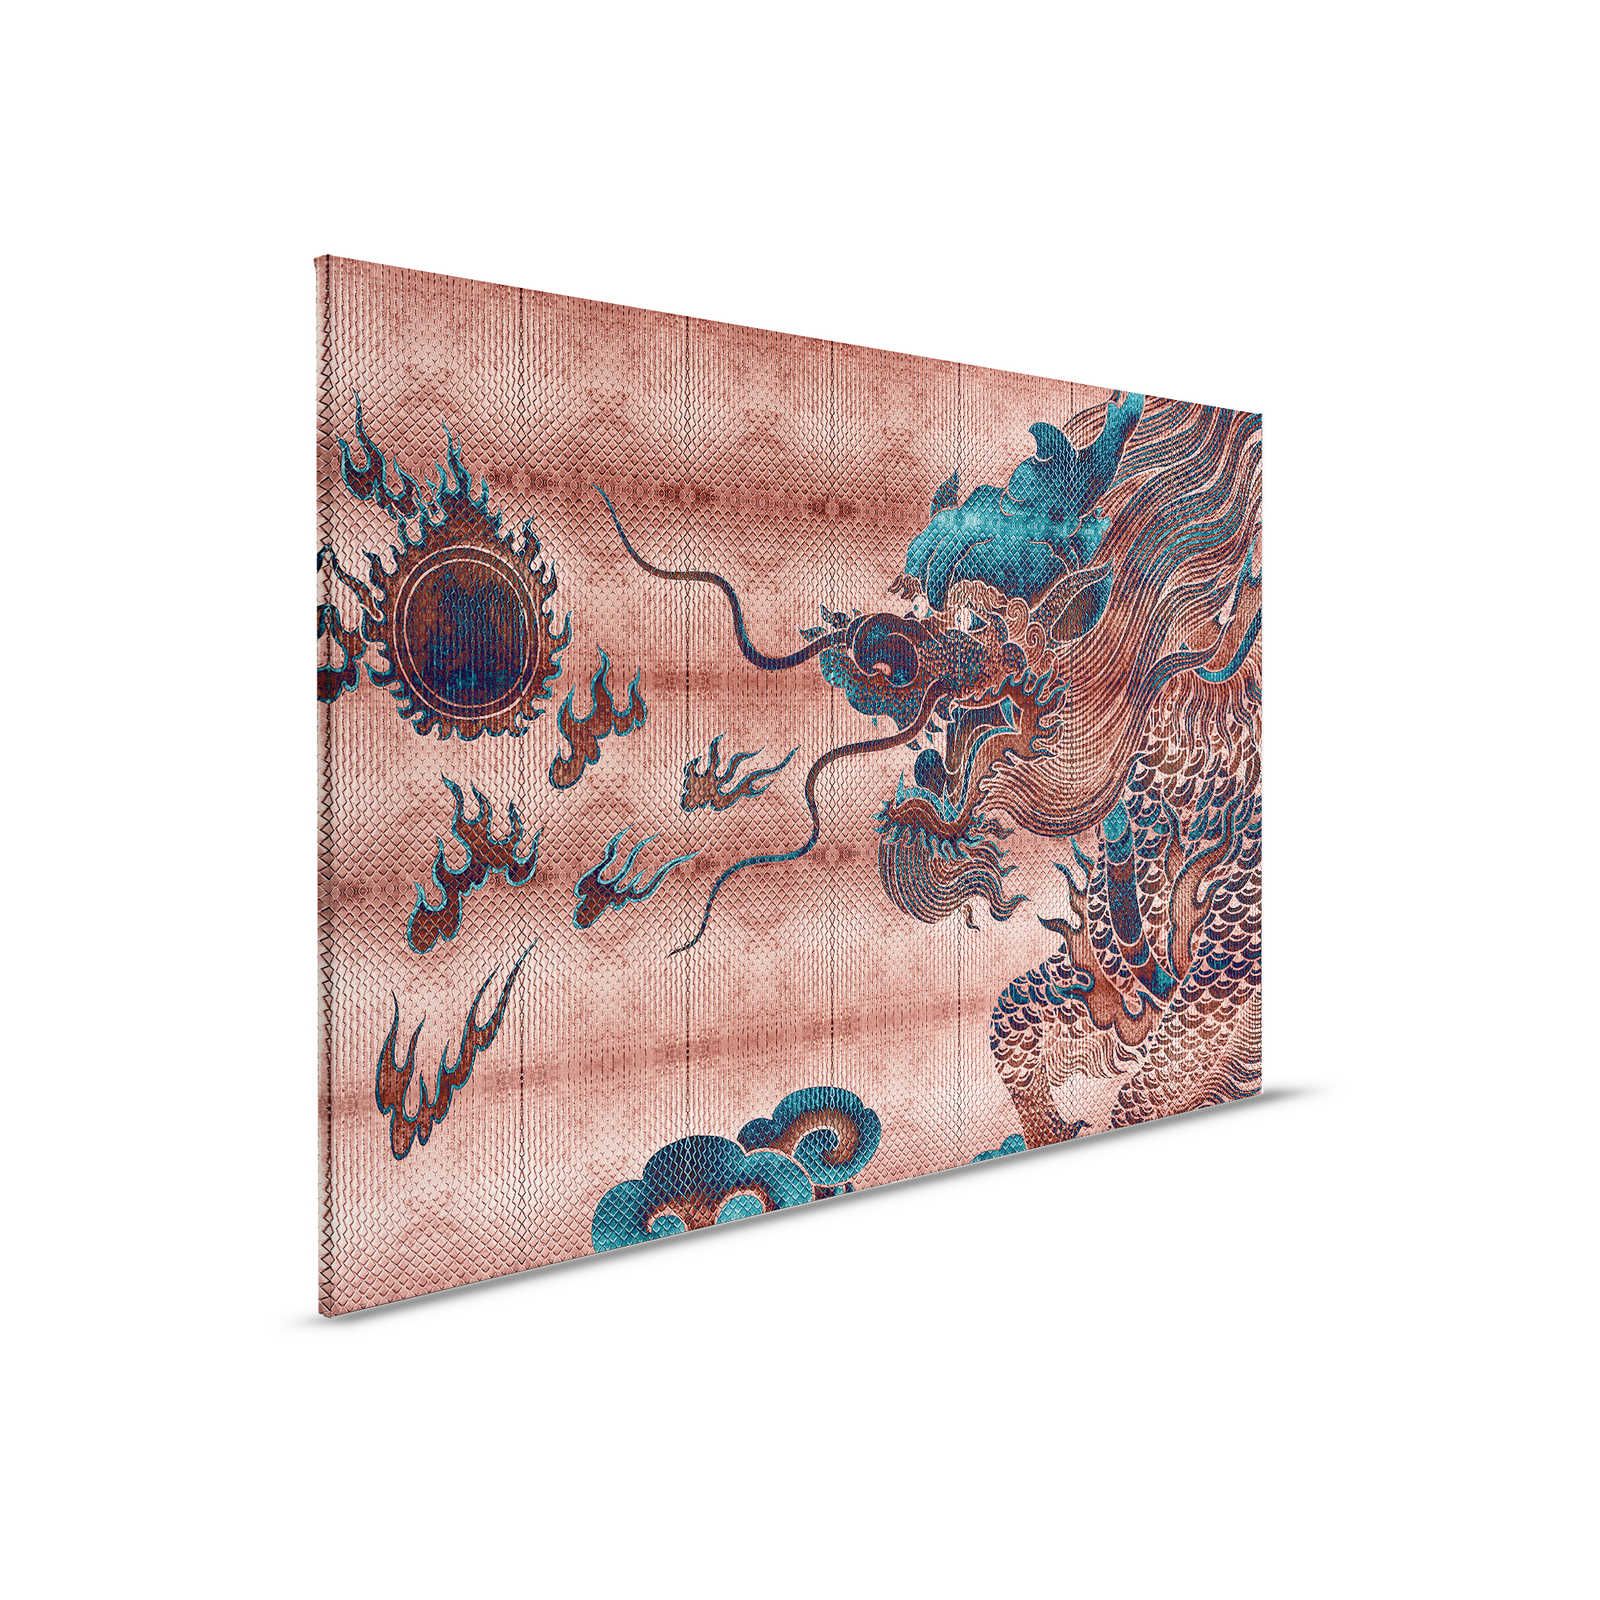 Shenzen 1 - Quadro su tela Dragon Asian Syle con colori metallici - 0,90 m x 0,60 m
